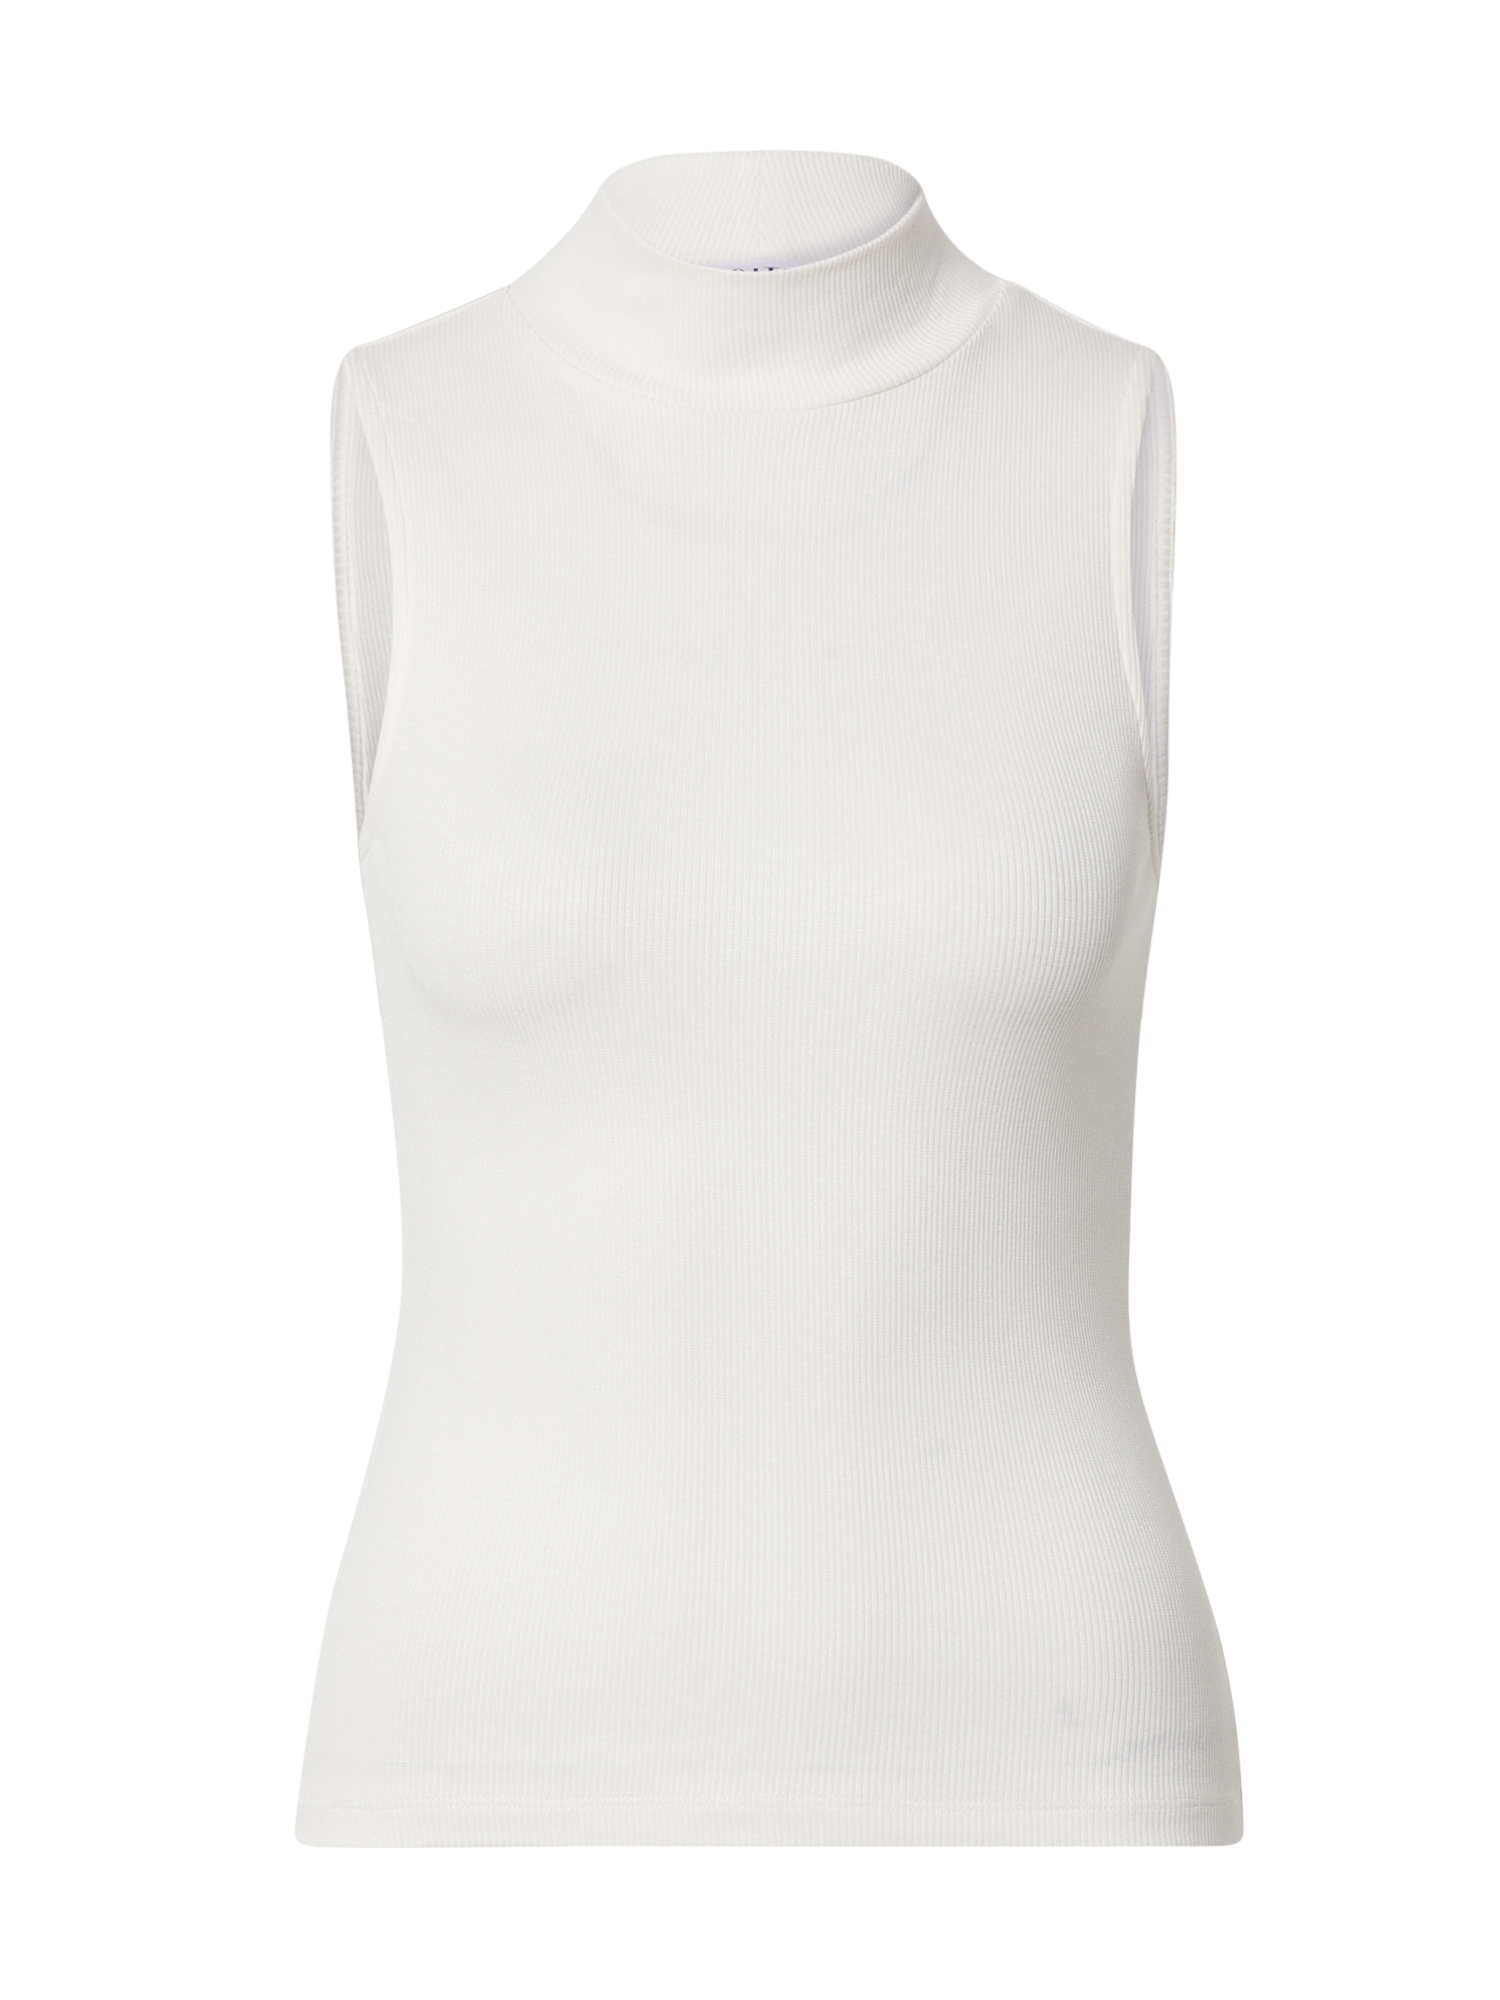 Kobiety Koszulki & topy EDITED Top Lara w kolorze Offwhitem 